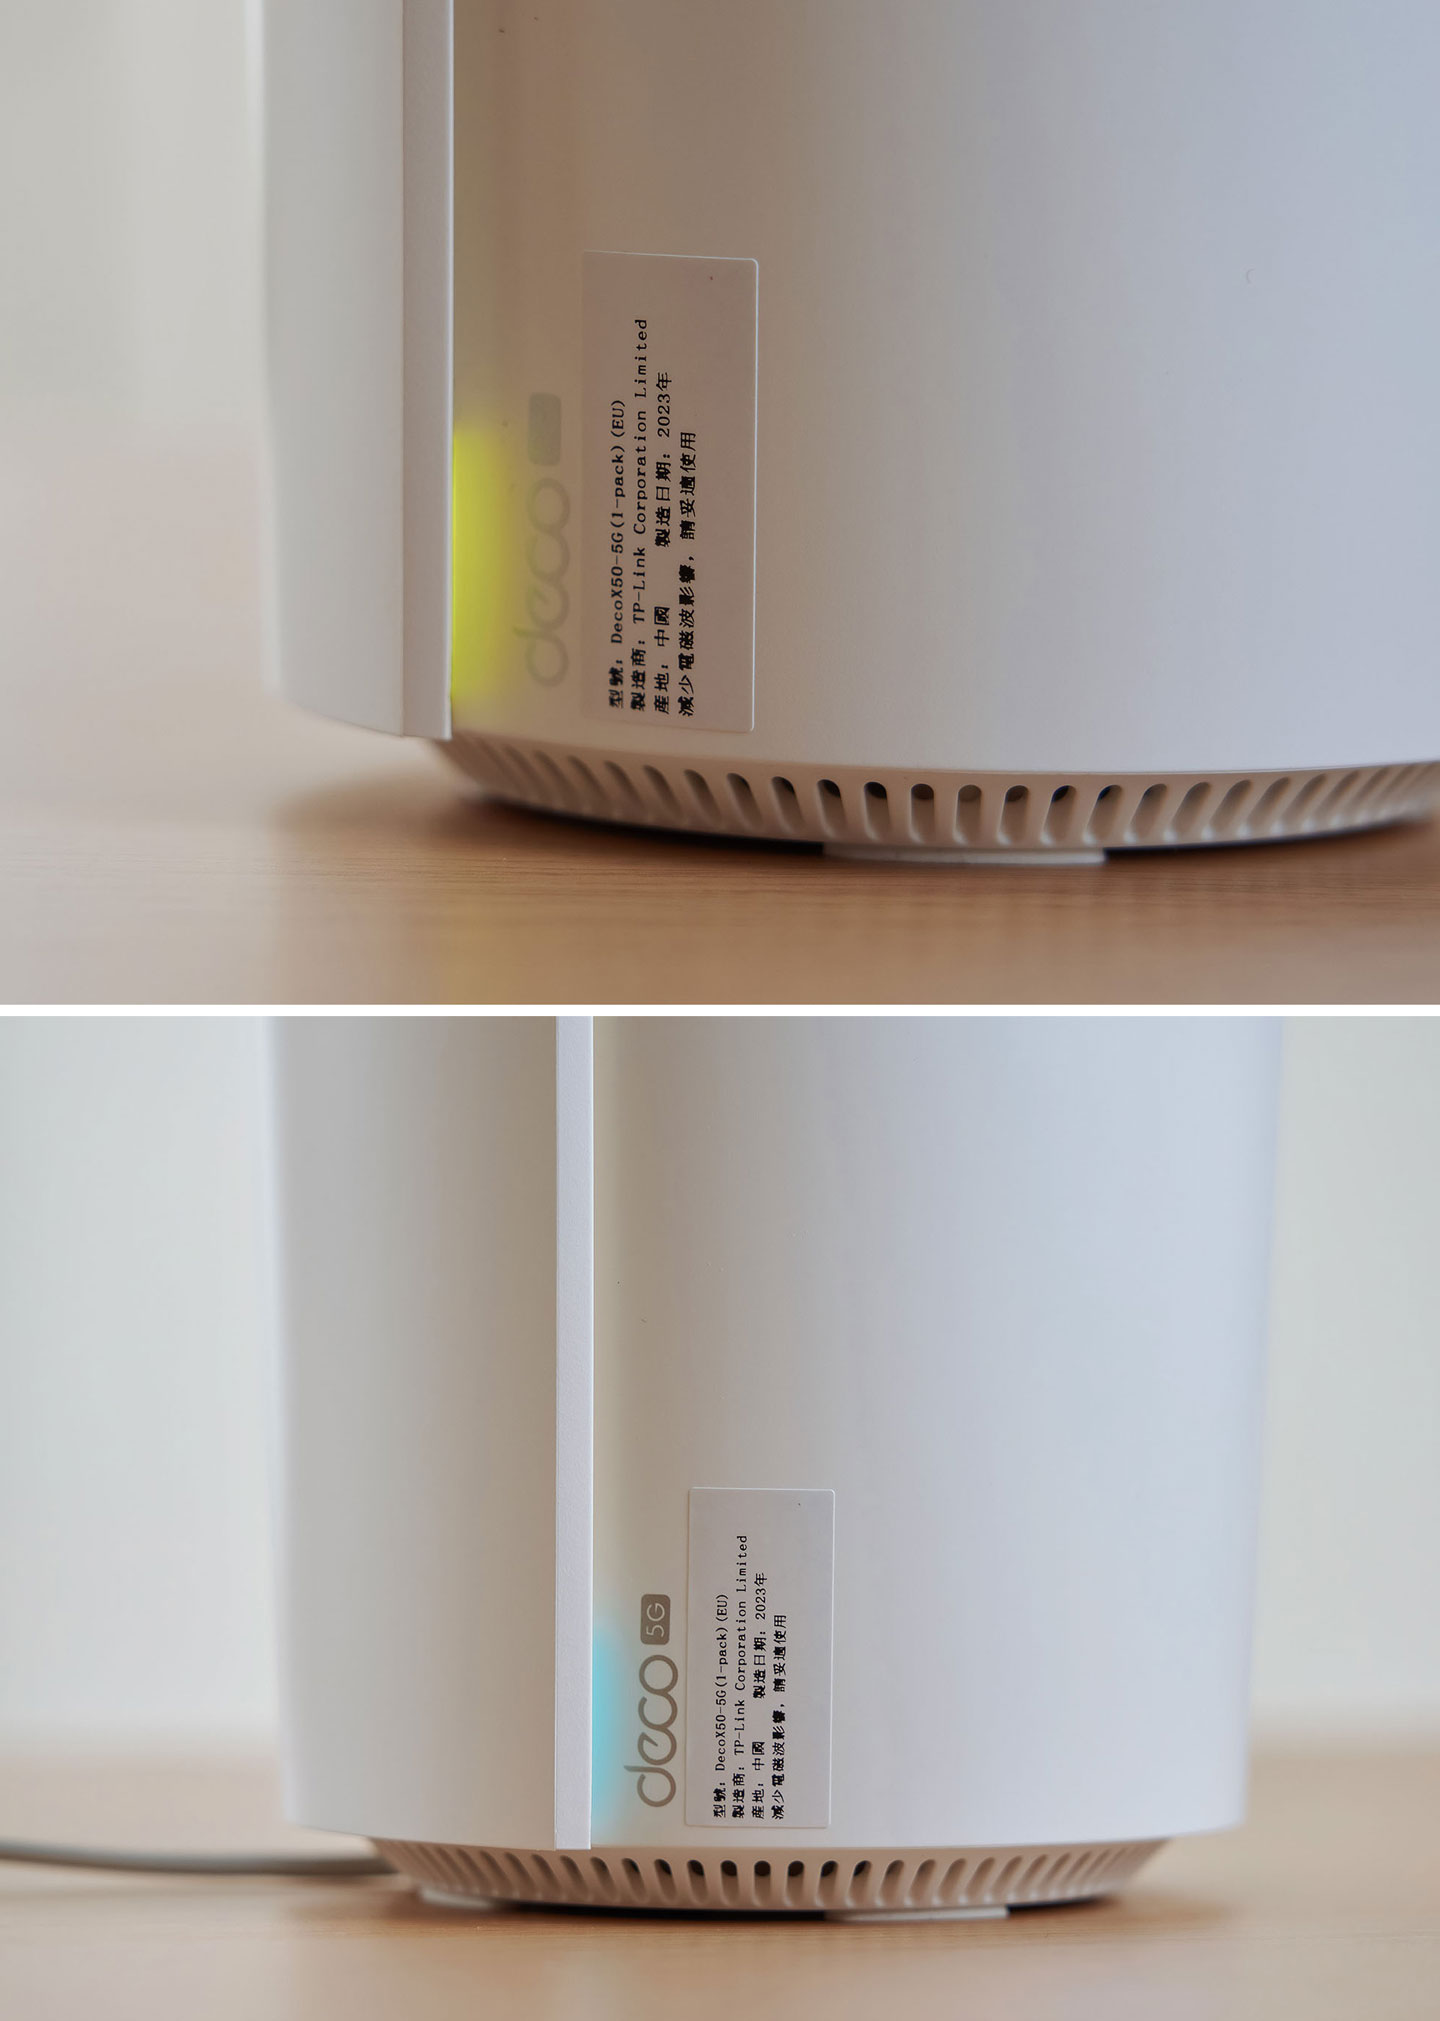 連結電源後 Deco X50-5G 會自動開啟，並亮起黃燈，待燈號轉變為藍燈慢閃後，即可進行初始化，定完成後燈號也會轉為白燈，若備連結異常則顯示紅燈。